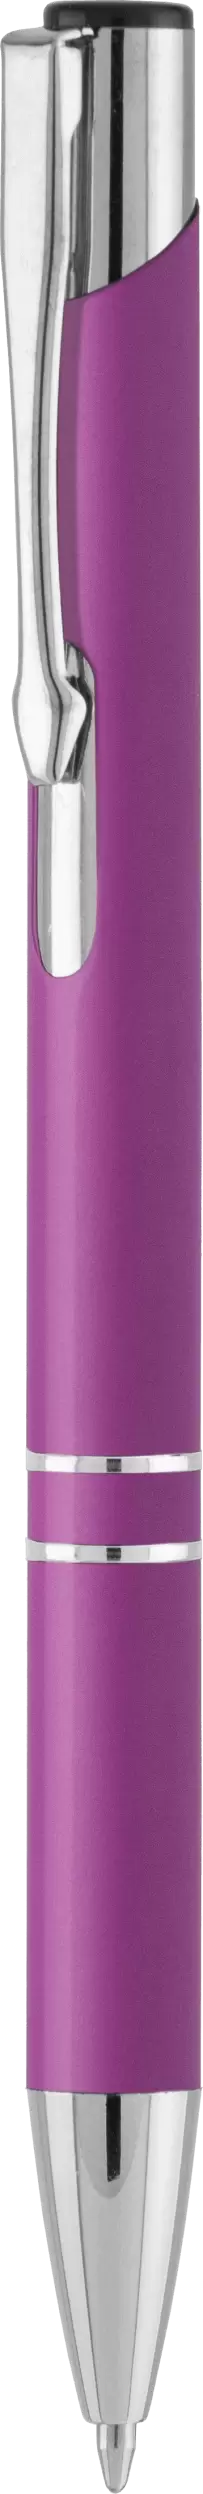 Ручка KOSKO SOFT Фиолетовая 1002-11